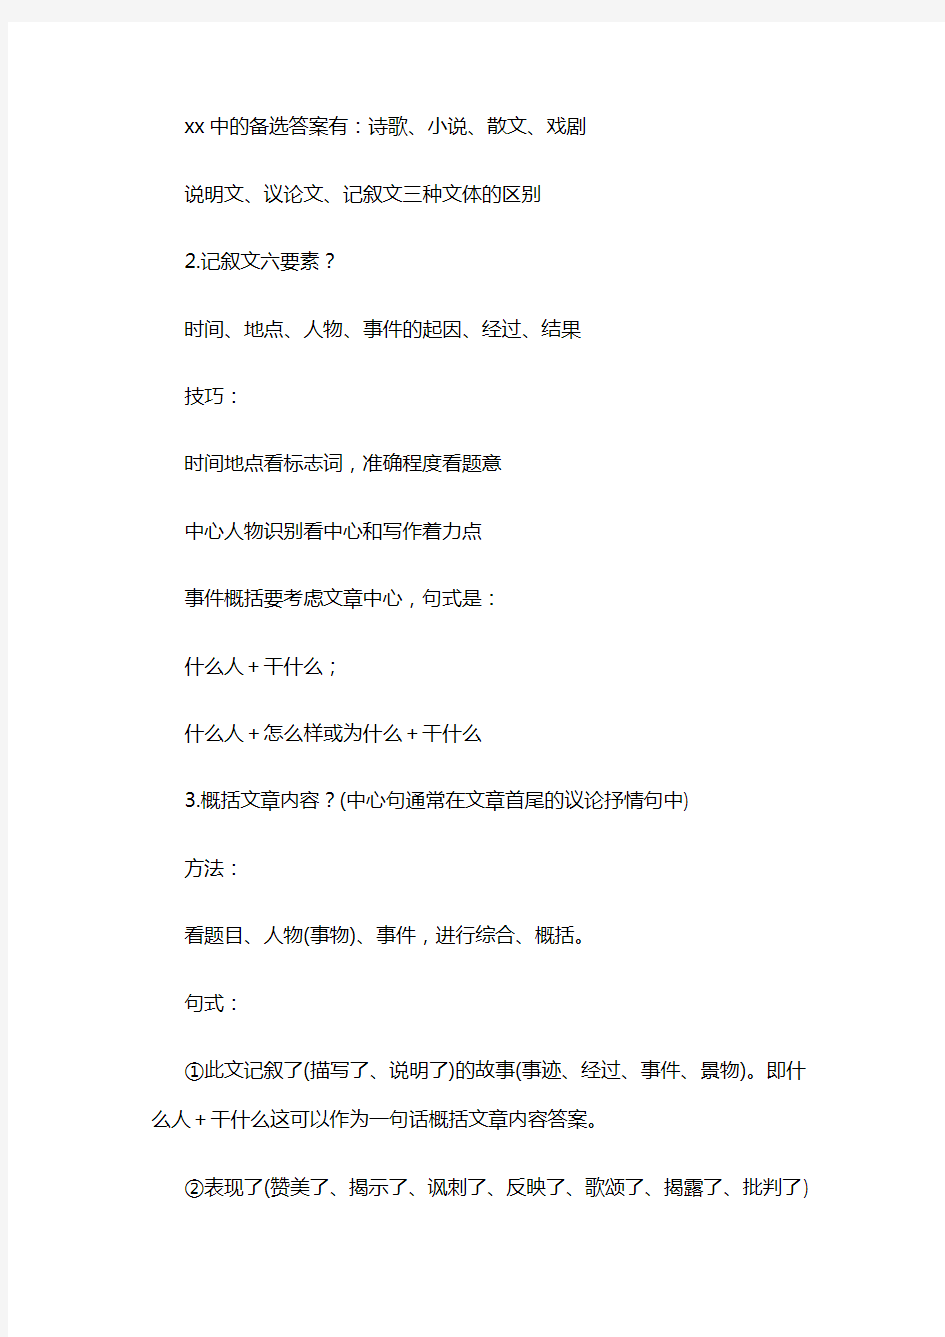 初中语文阅读理解33套答题公式